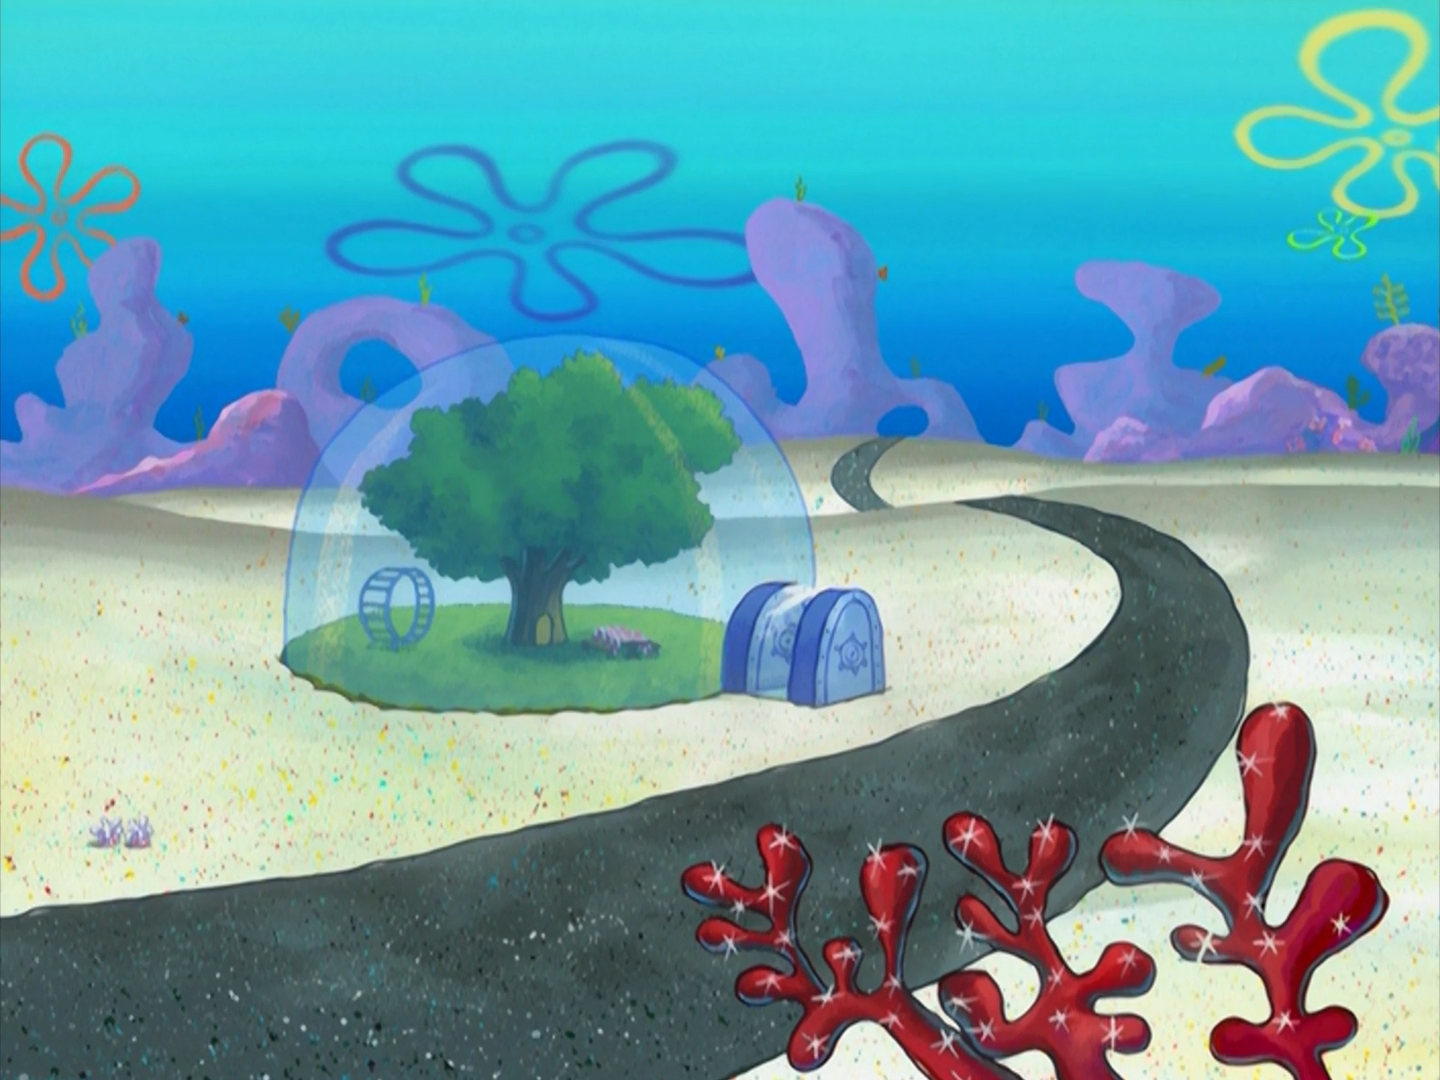 spongebob neptune game online